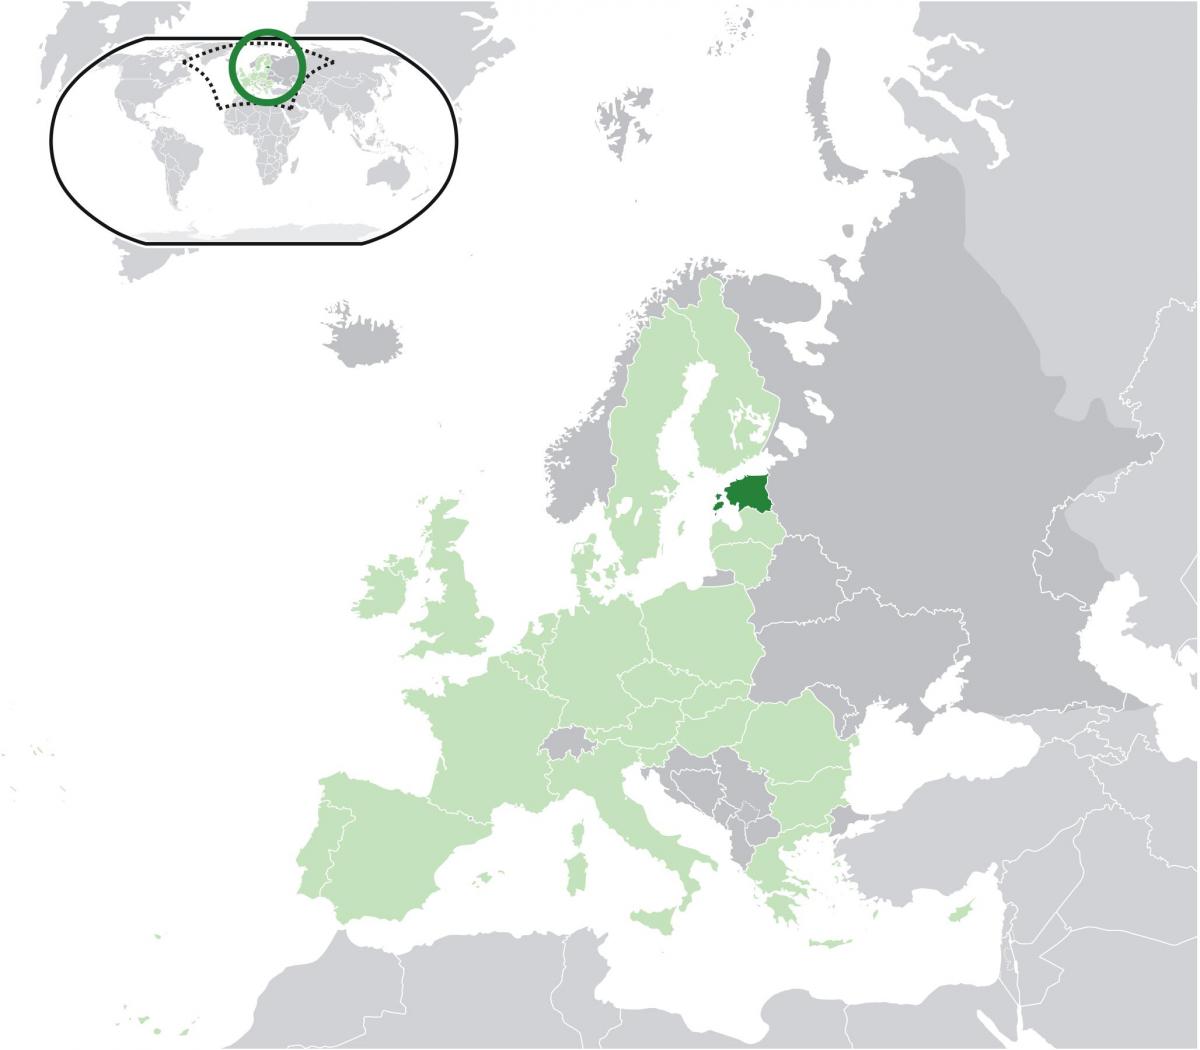 Estland på en karta över europa